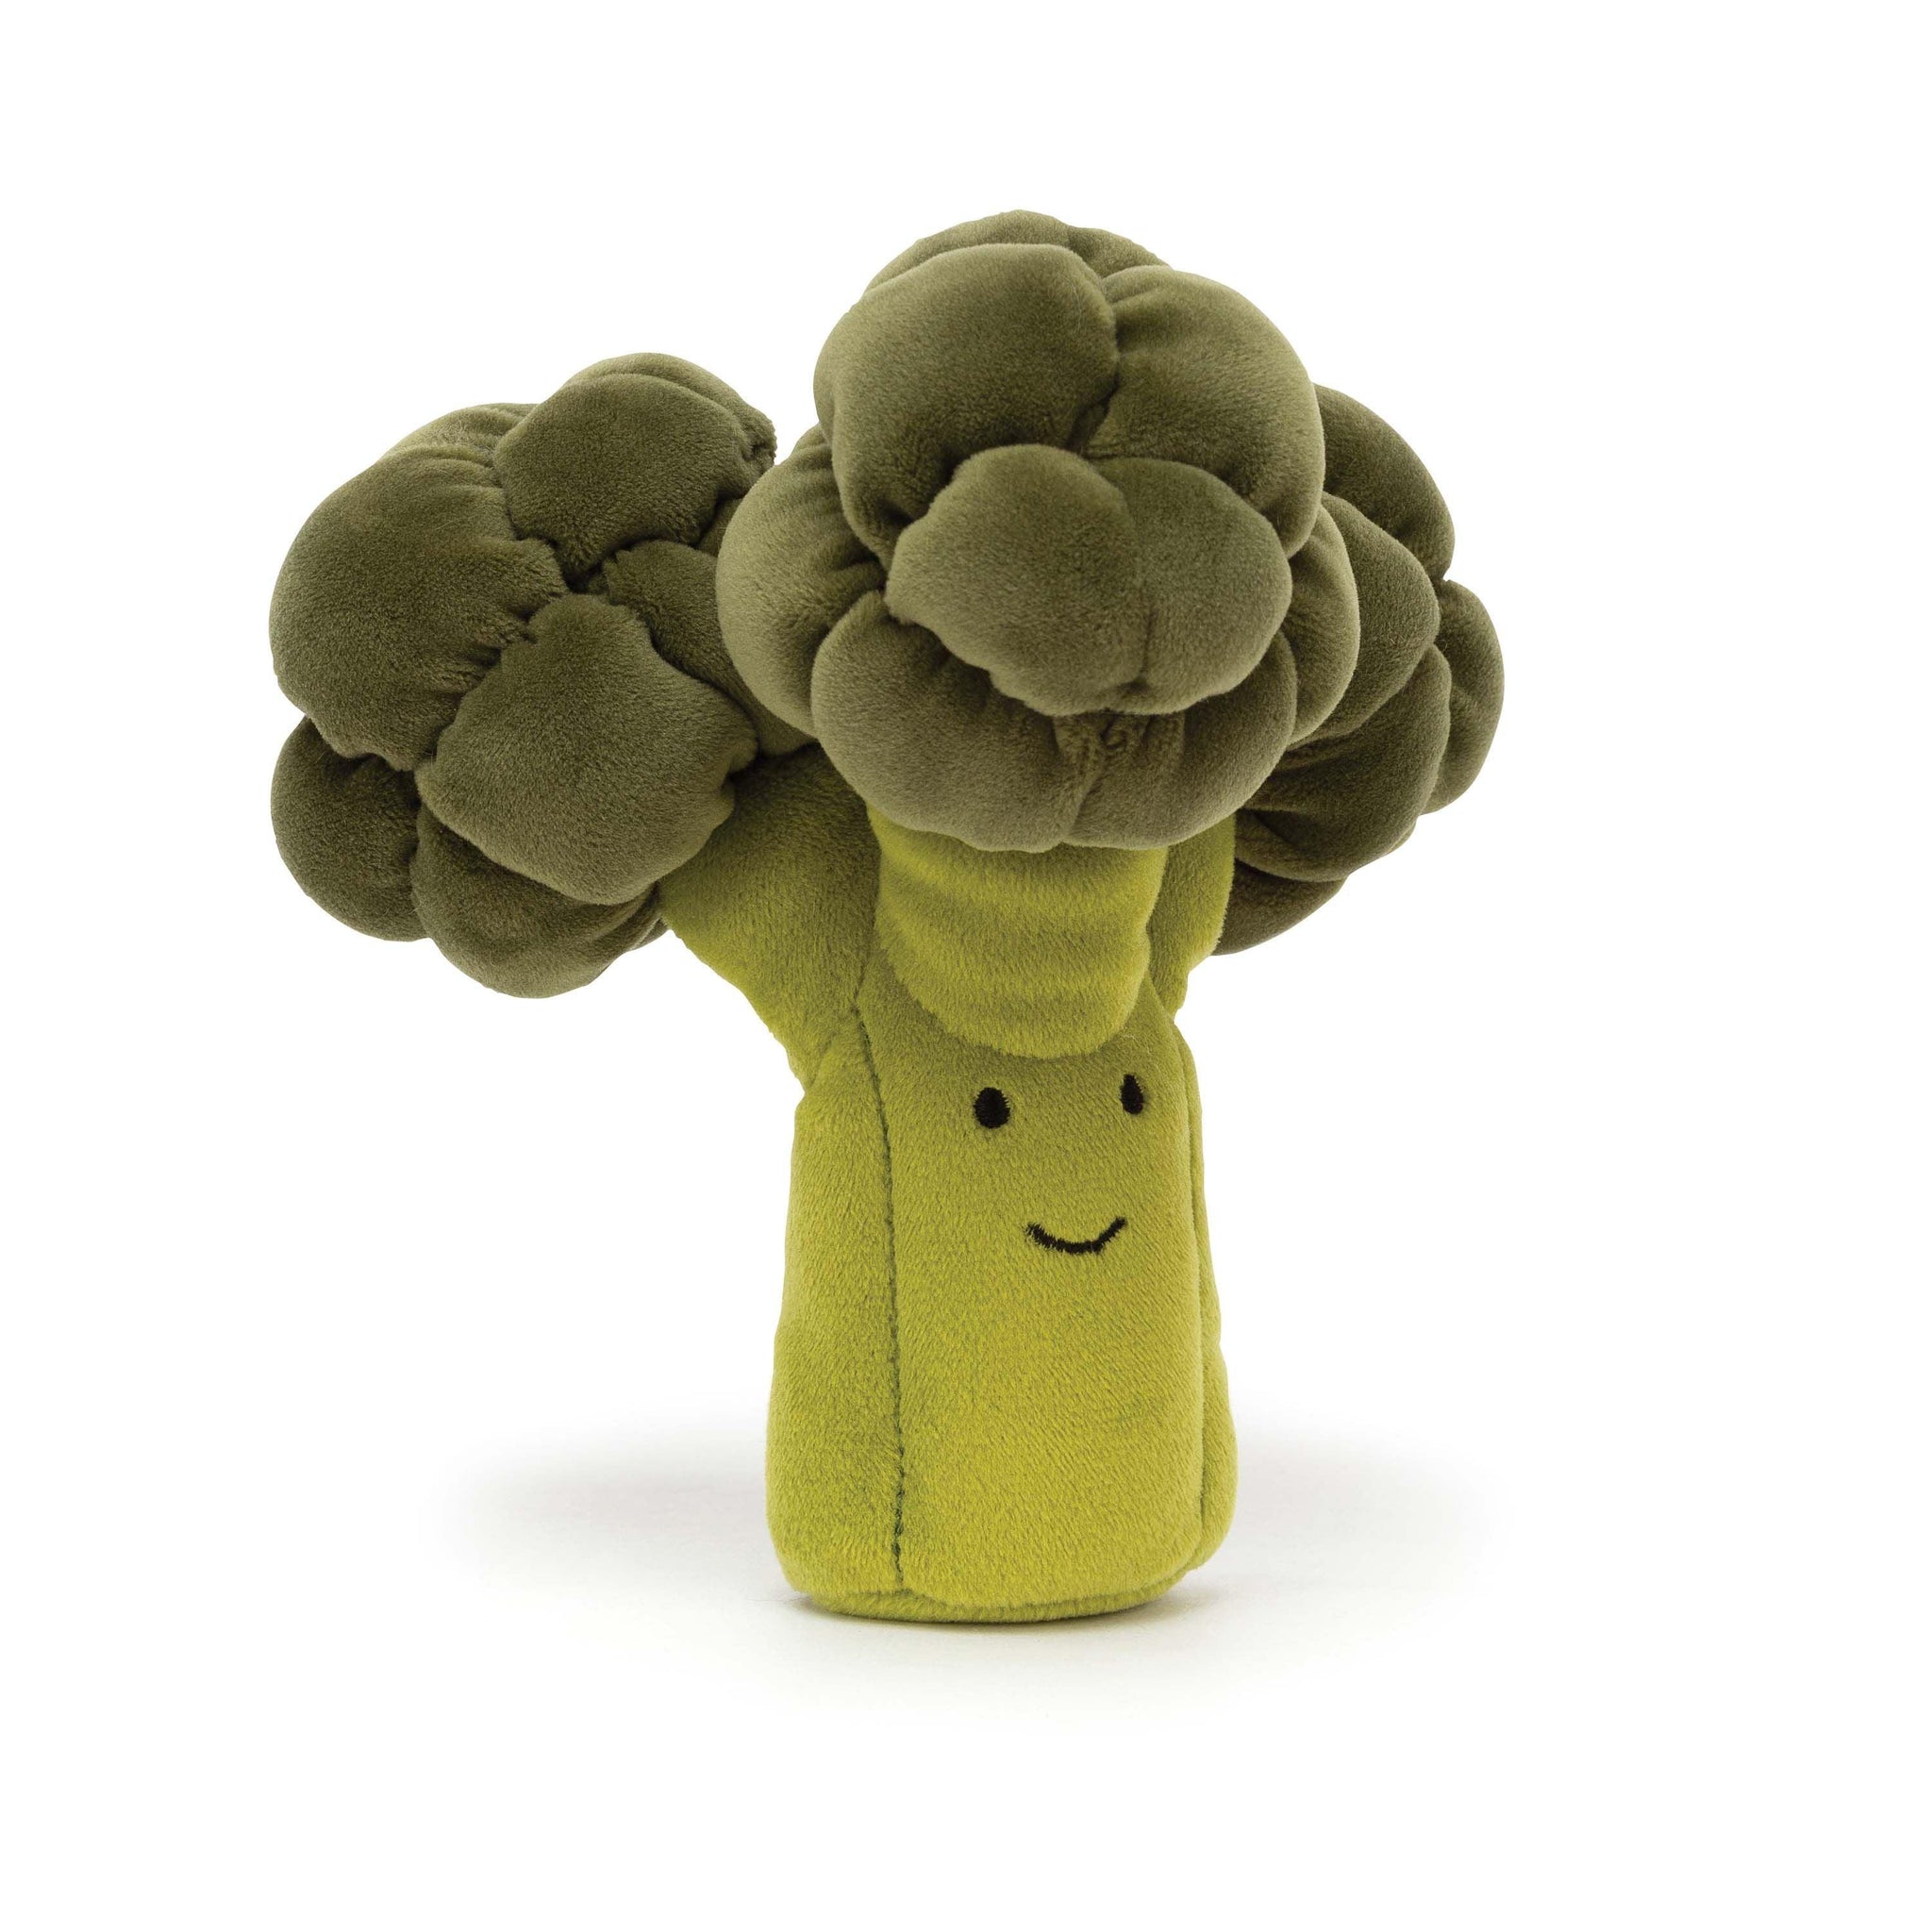 Jellycat - Vivacious Vegetable - Broccoli - Handworks Nouveau Paperie